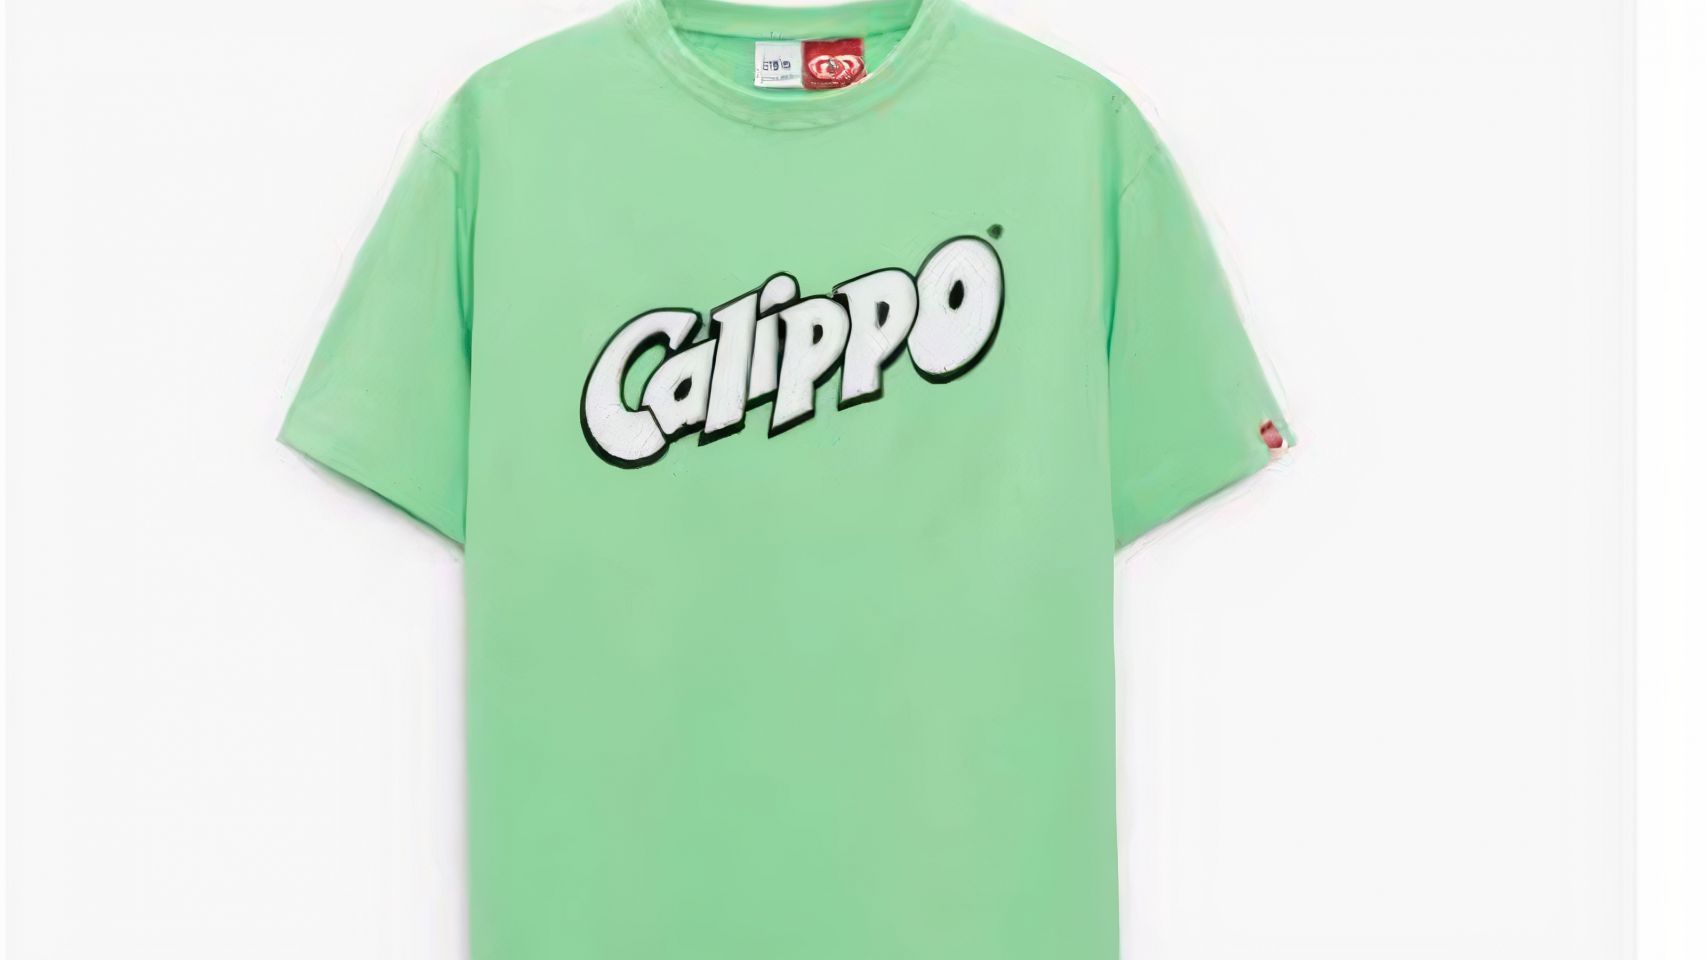 Camiseta de Calippo.